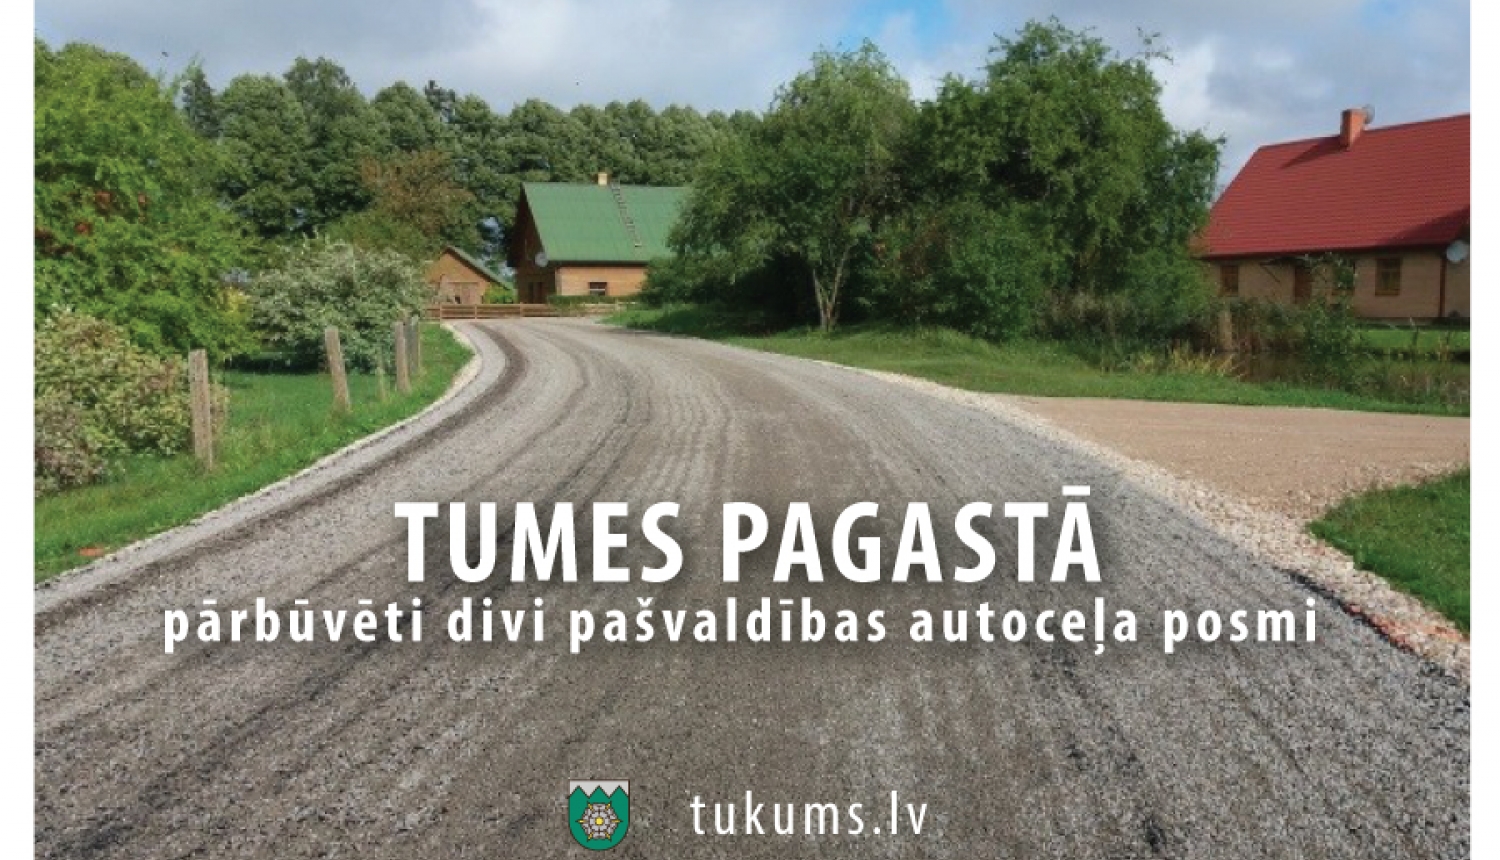 Tumes pagastā ir pārbūvēti divi pašvaldības autoceļa posmi